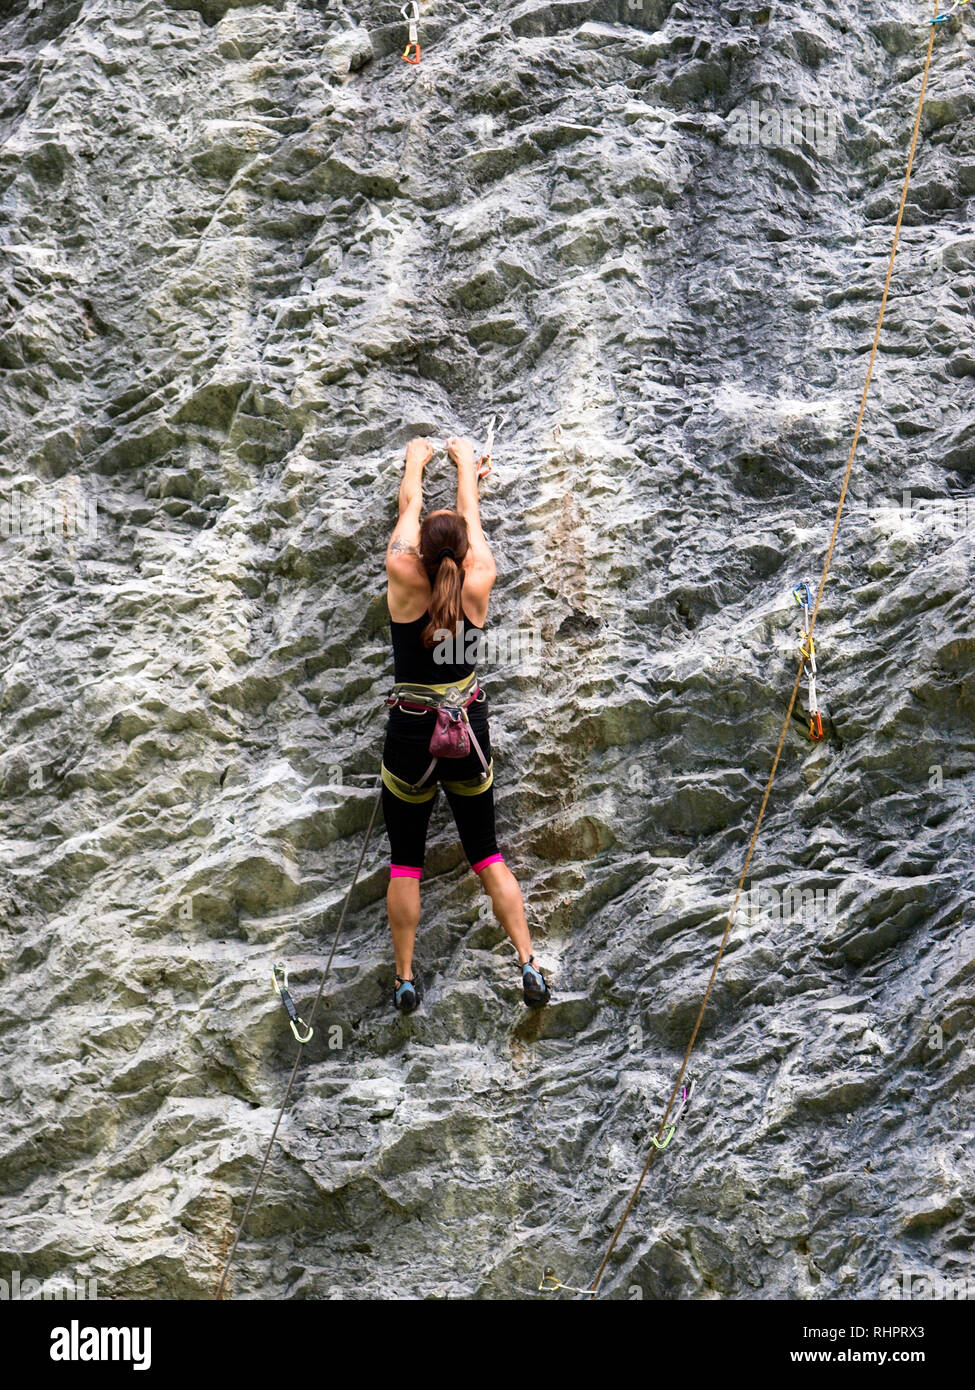 Engelberg, Svizzera - 29 luglio 2017: scalatore sulla verticalità Foto Stock